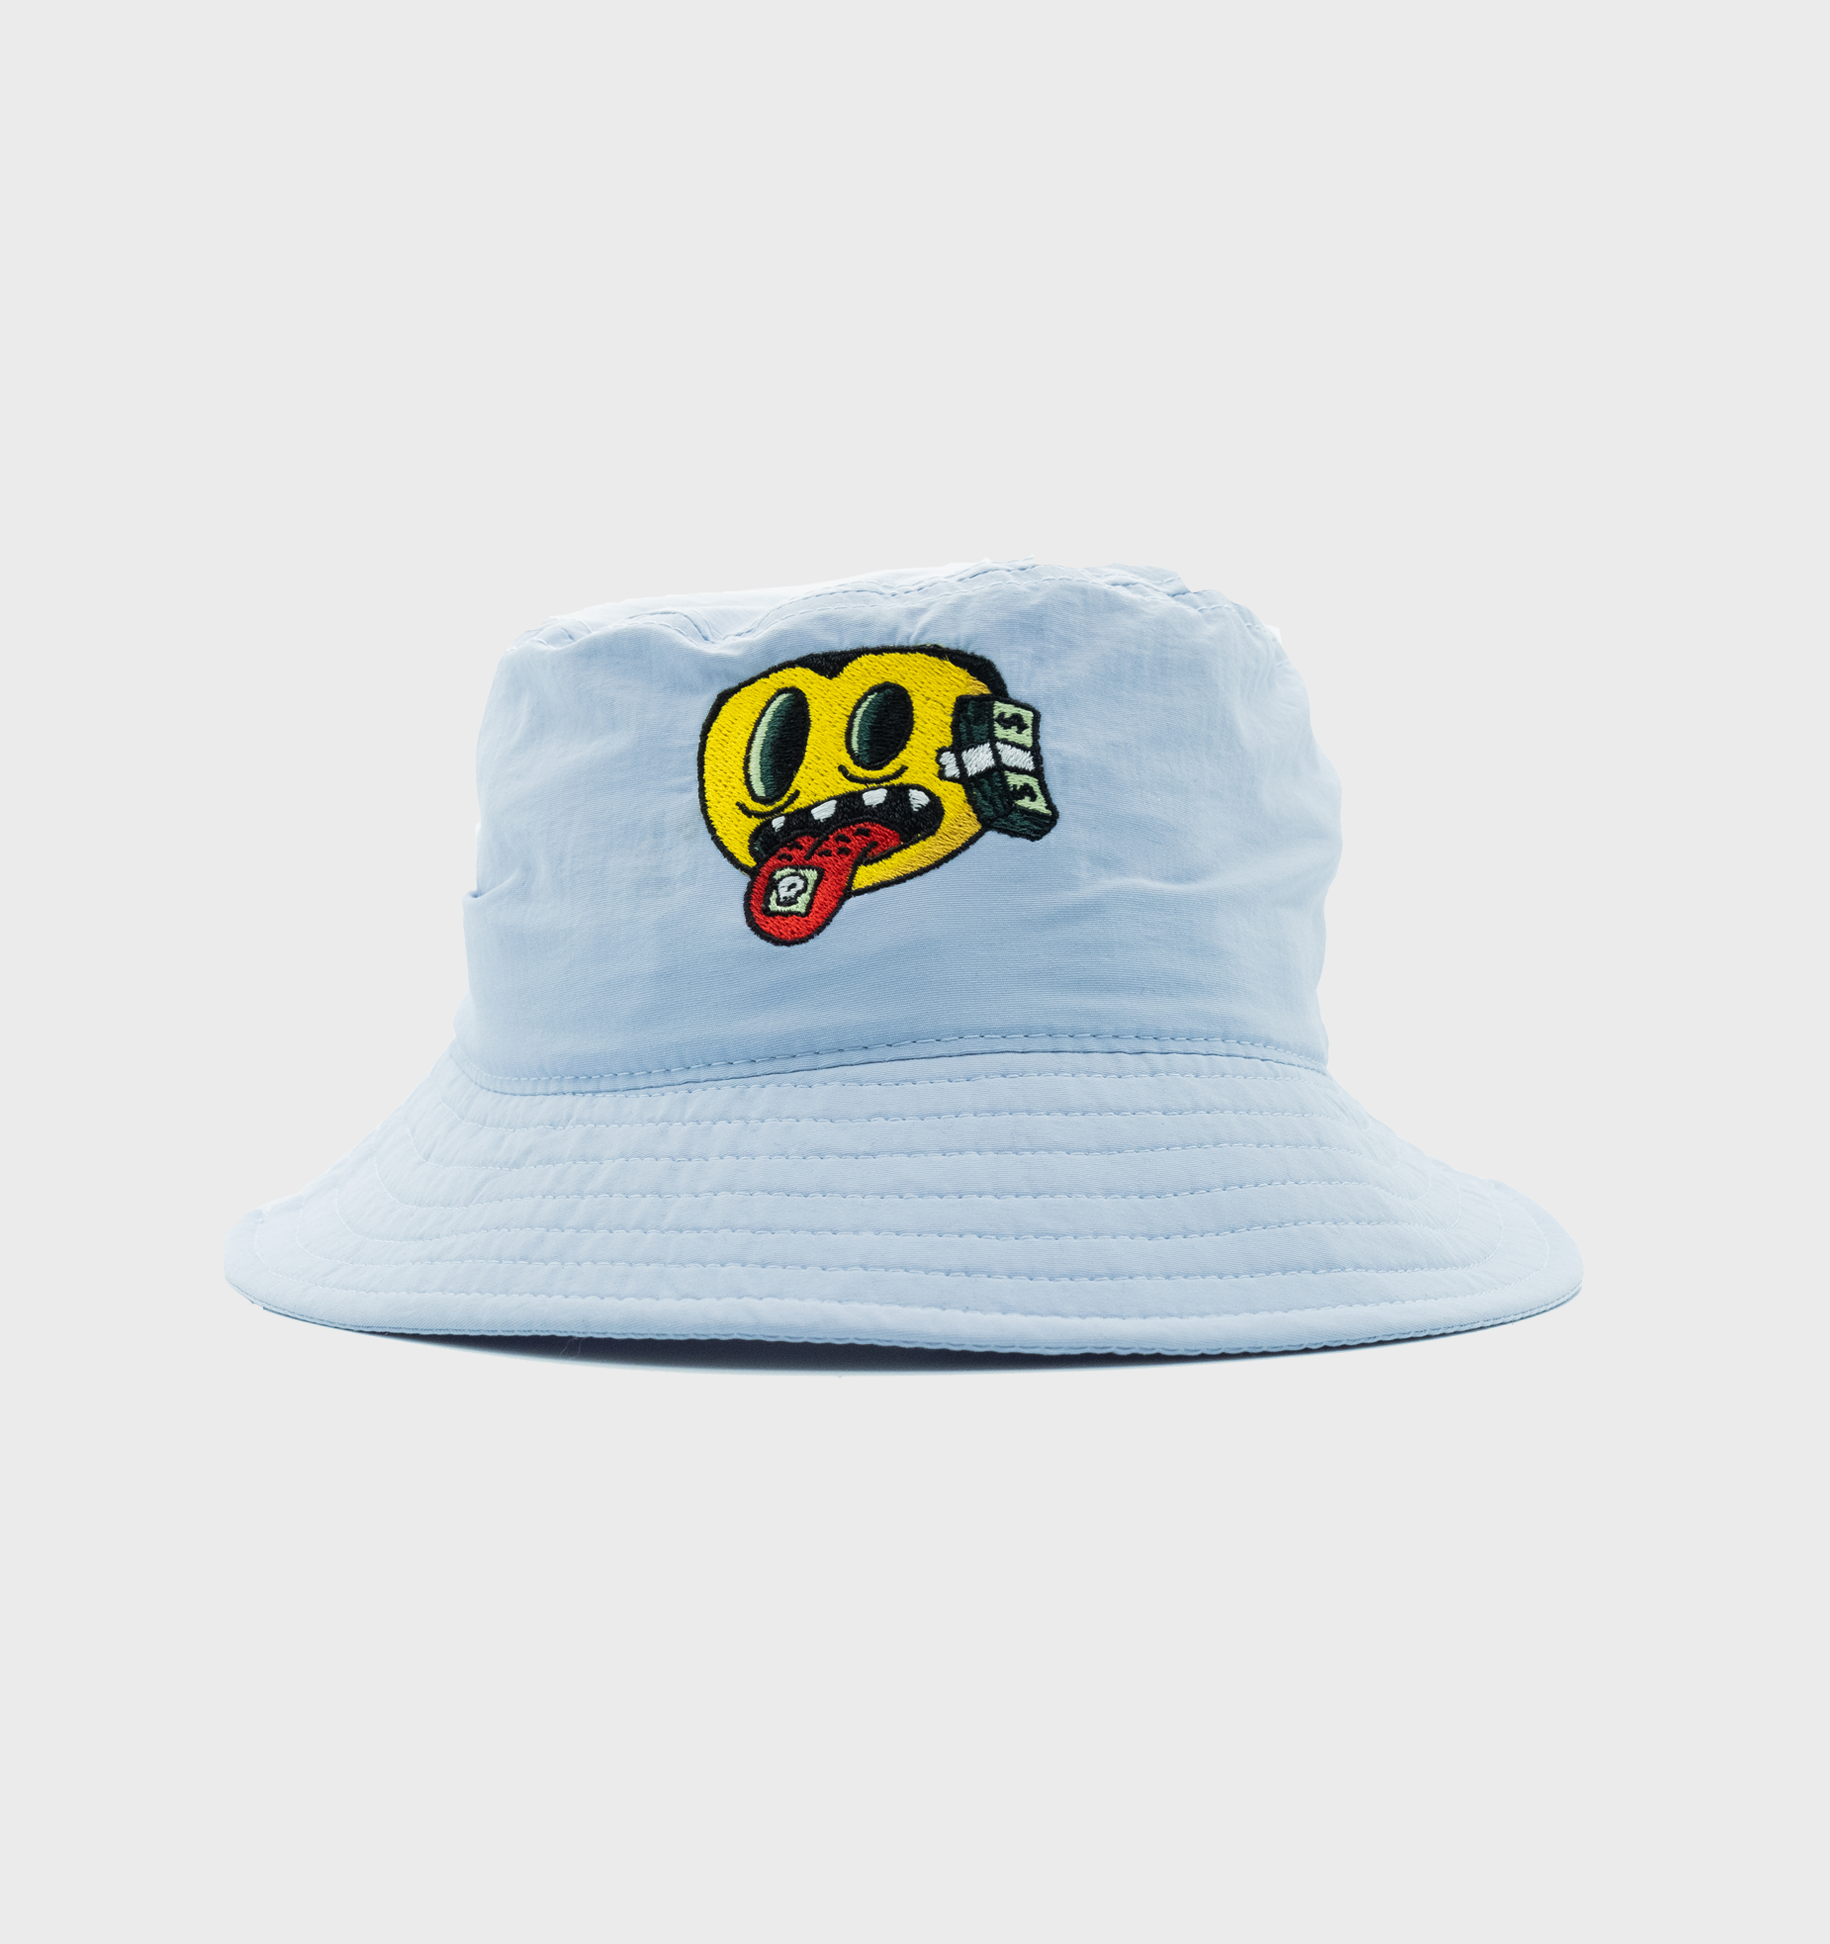 DG We Trippy Mane Bucket Hat - Baby Blue